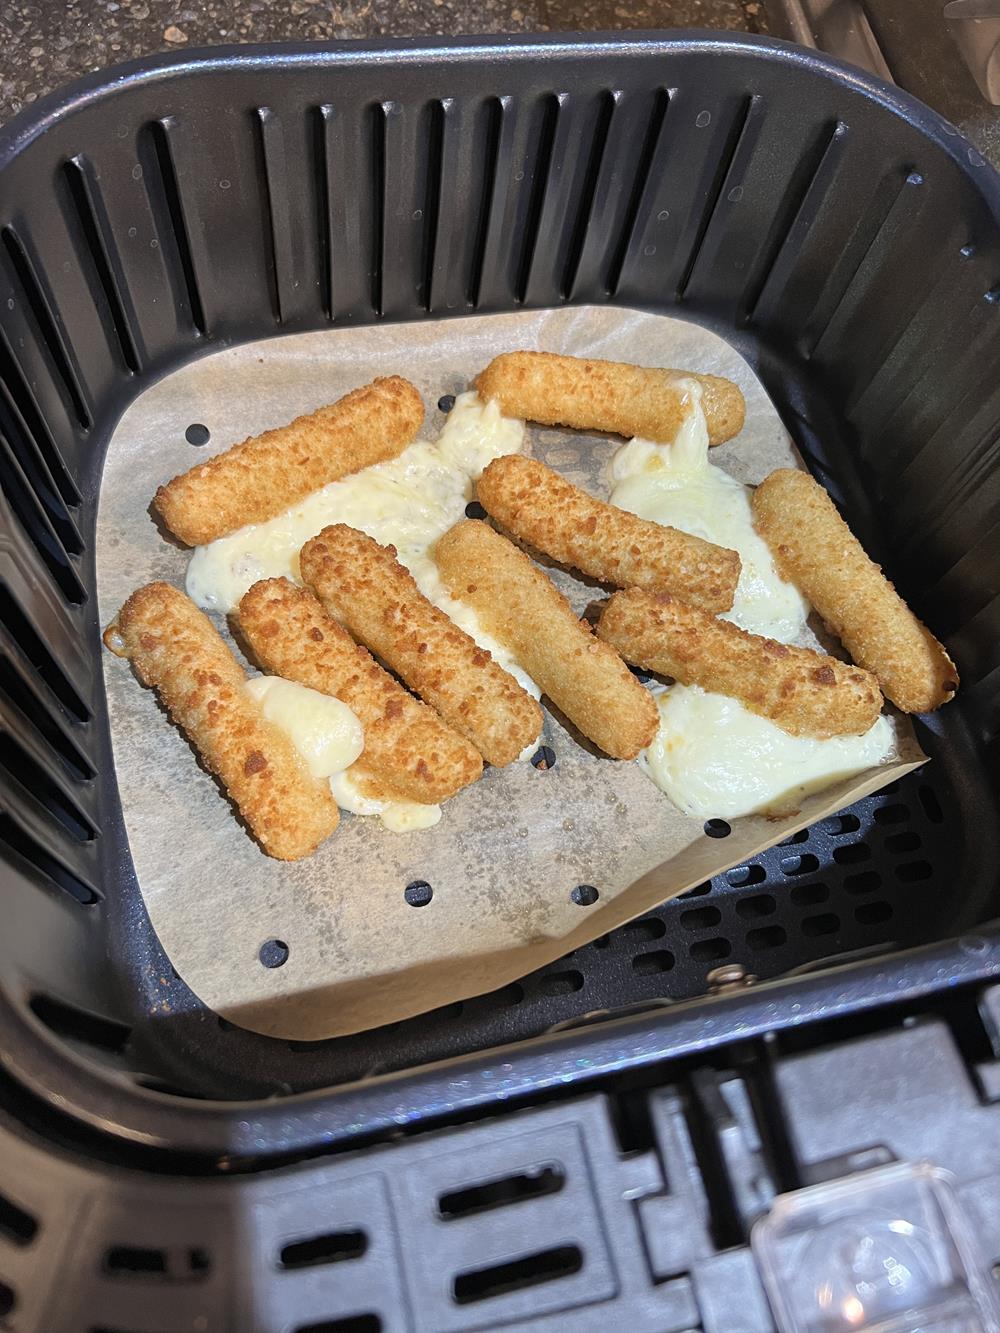 mozzarella sticks in air fryer